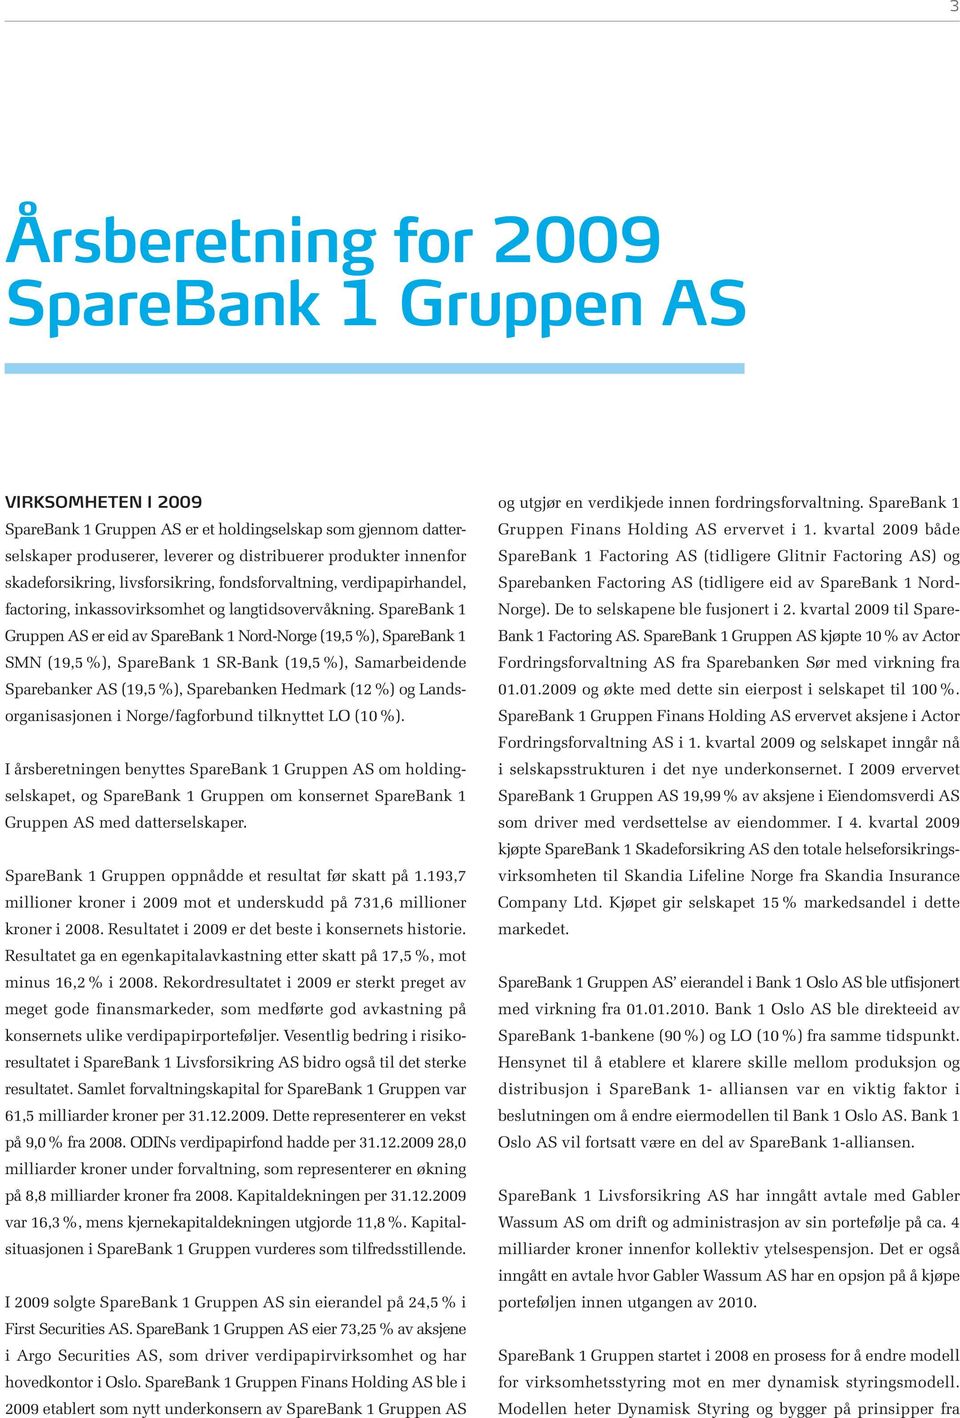 SpareBank 1 Gruppen AS er eid av SpareBank 1 Nord-Norge (19,5%), SpareBank 1 SMN (19,5 %), SpareBank 1 SR-Bank (19,5 %), Samarbeidende Sparebanker AS (19,5 %), Sparebanken Hedmark (12 %) og